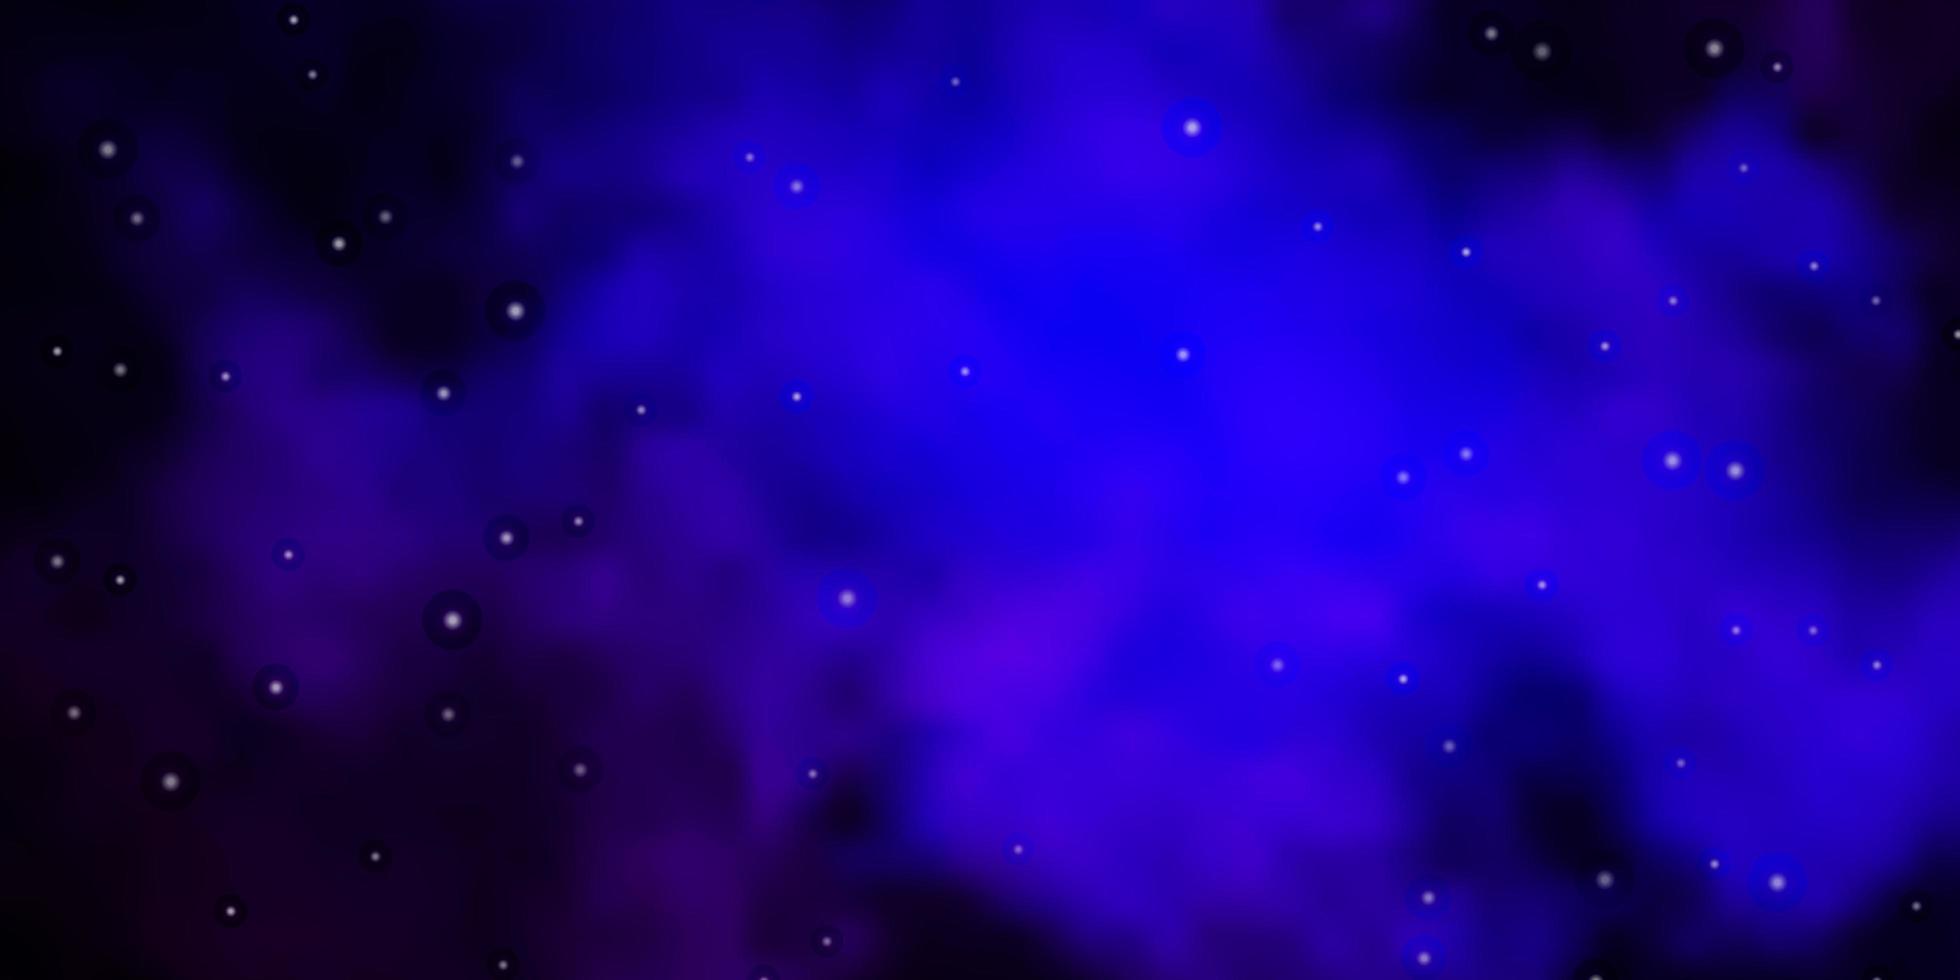 fundo vector rosa escuro, azul com estrelas coloridas.